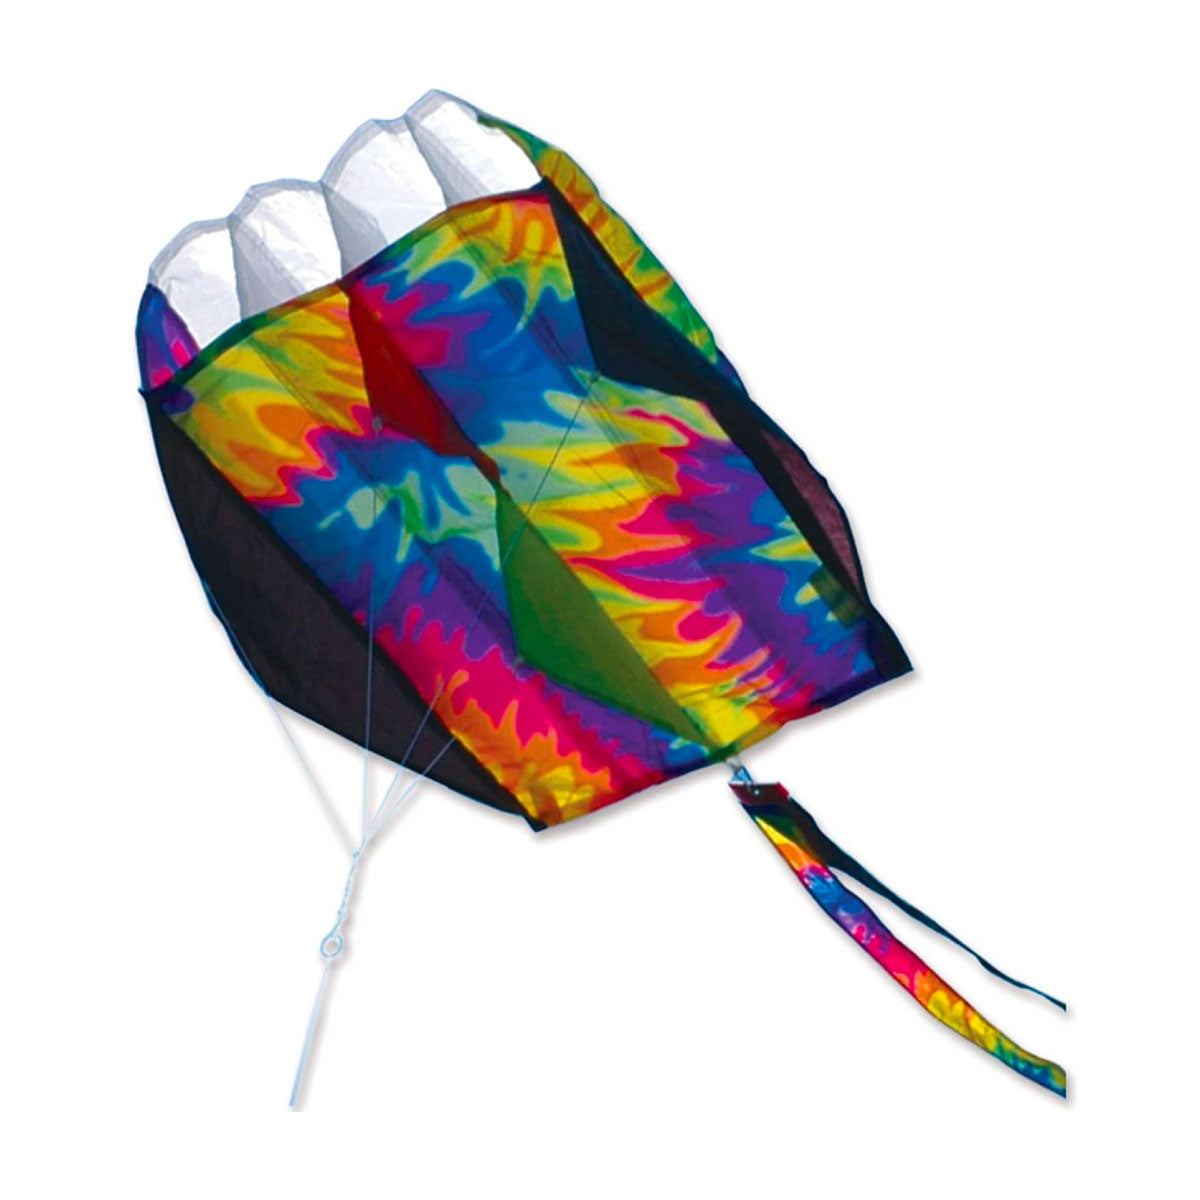 Rainbow Tie Dye Parafoil 2 Kite from Premier Kites